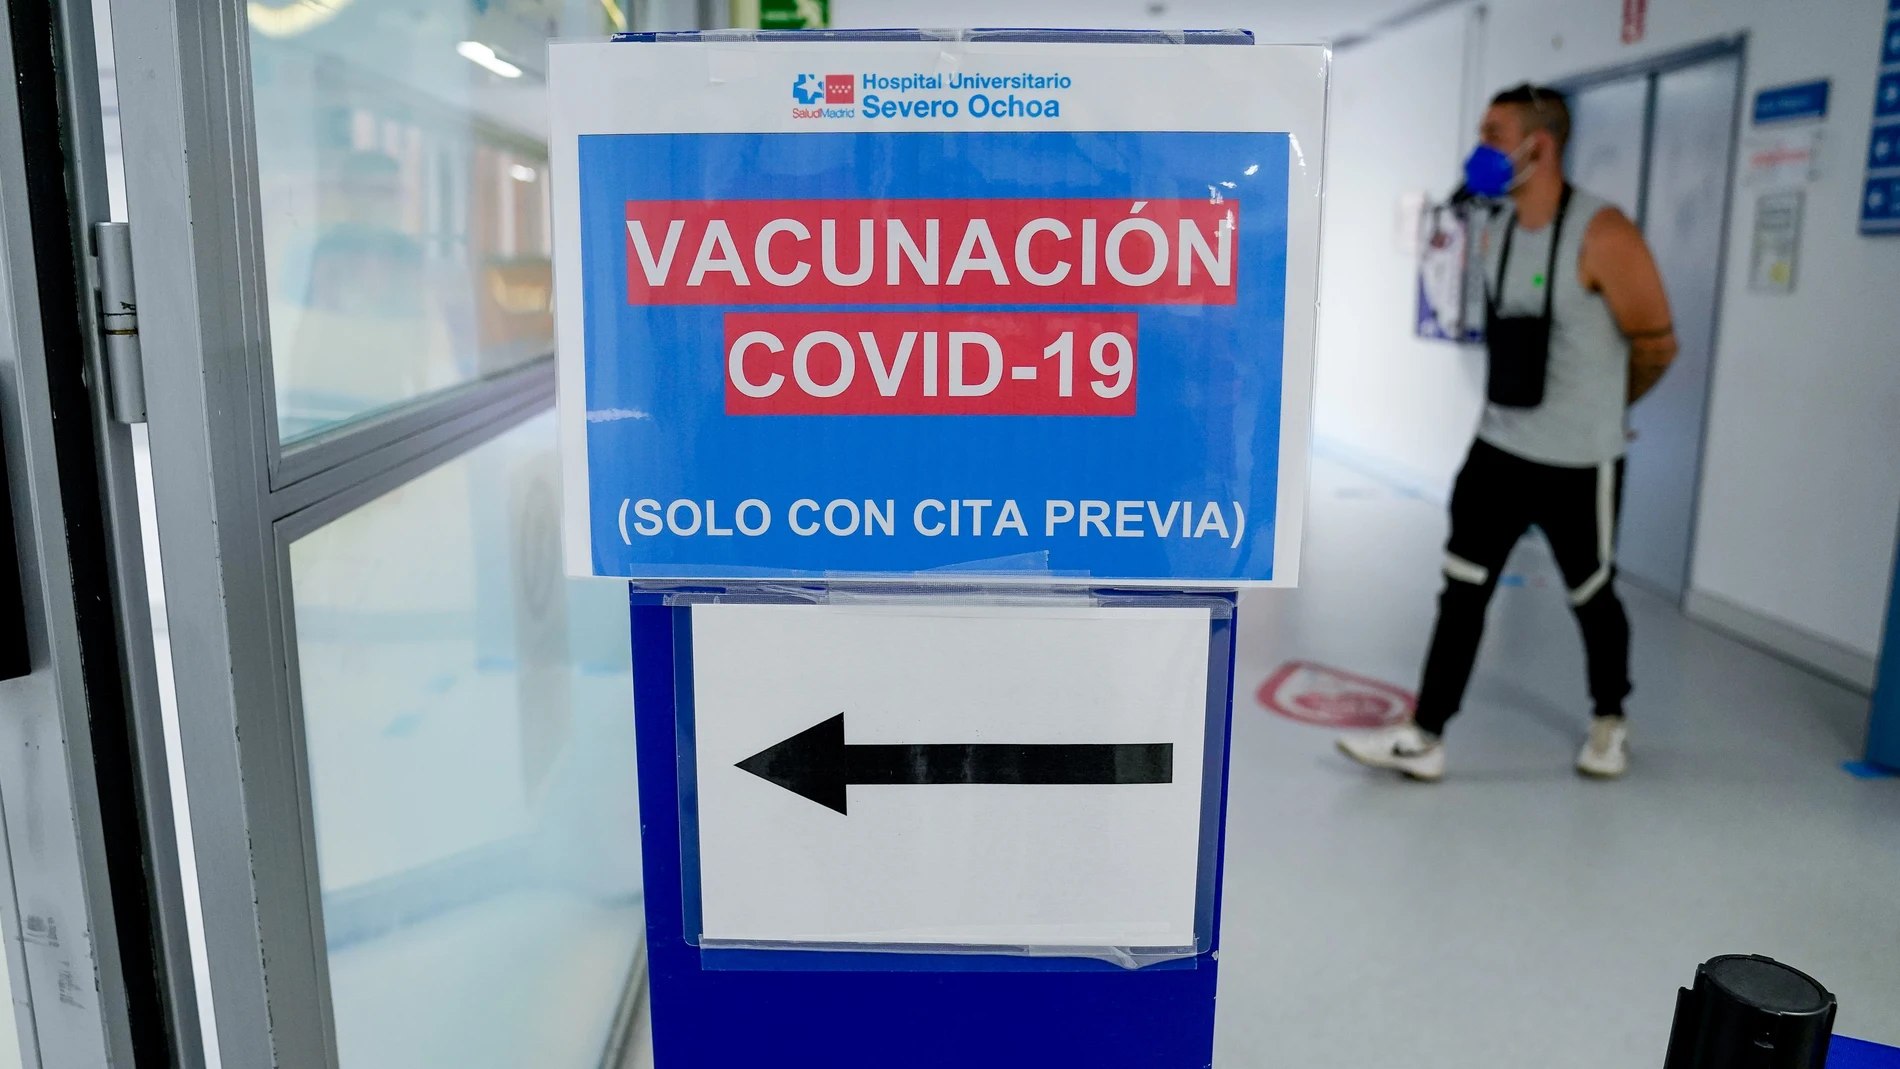 Señal del dispositivo de vacunación en el Hospital Severo Ochoa de Leganés, Leganés, Madrid, (España)